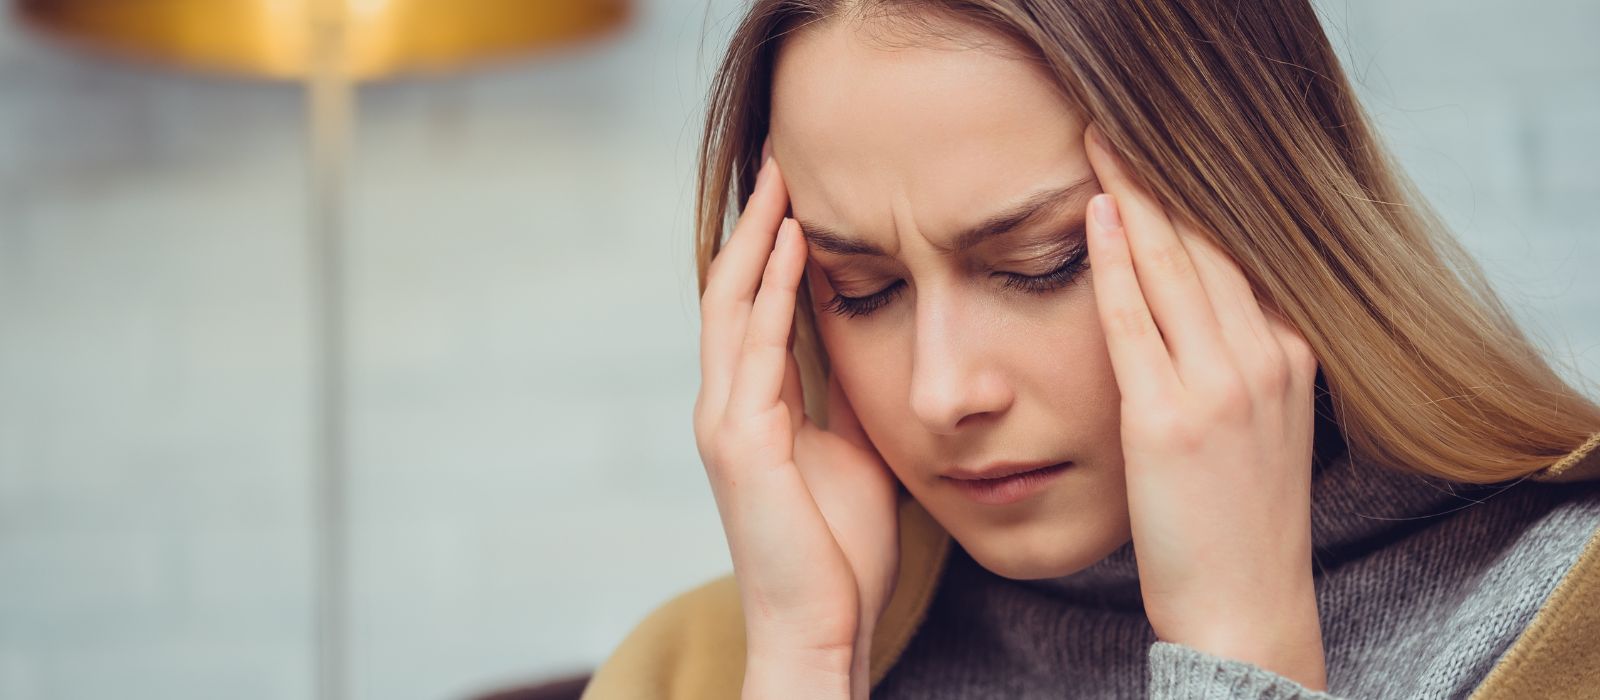 Napięciowe bóle głowy – jaka jest ich przyczyna?